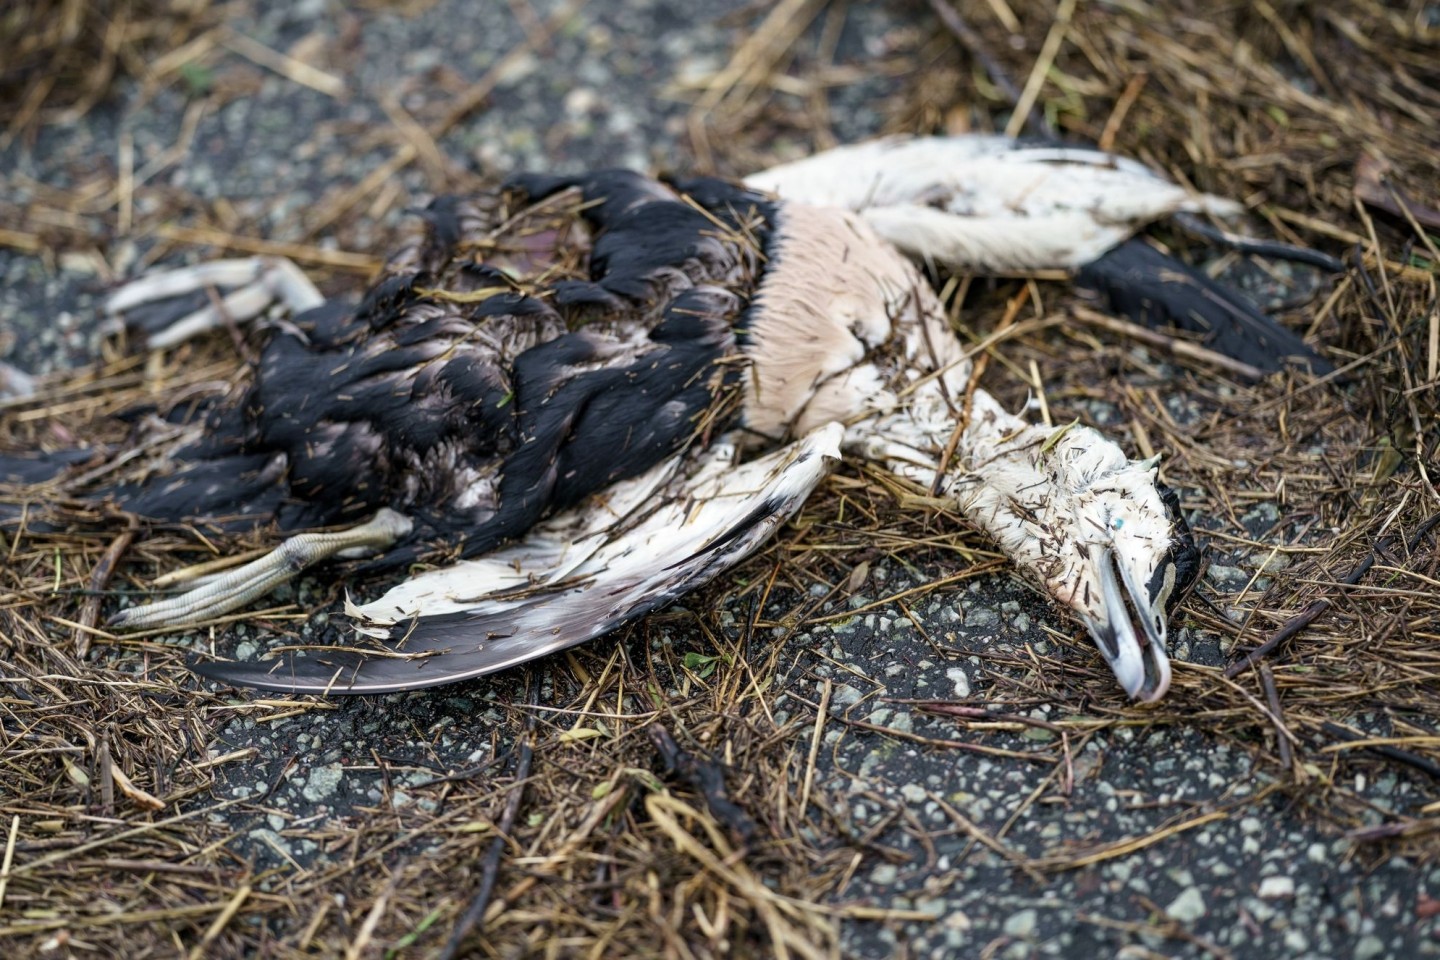 Eine Eiderente liegt tot am Strand der Nordsee. Laut Angaben eines Mitarbeiters des Küstenschutzes ist der Seevogel vermutlich an der Vogelgrippe gestorben.